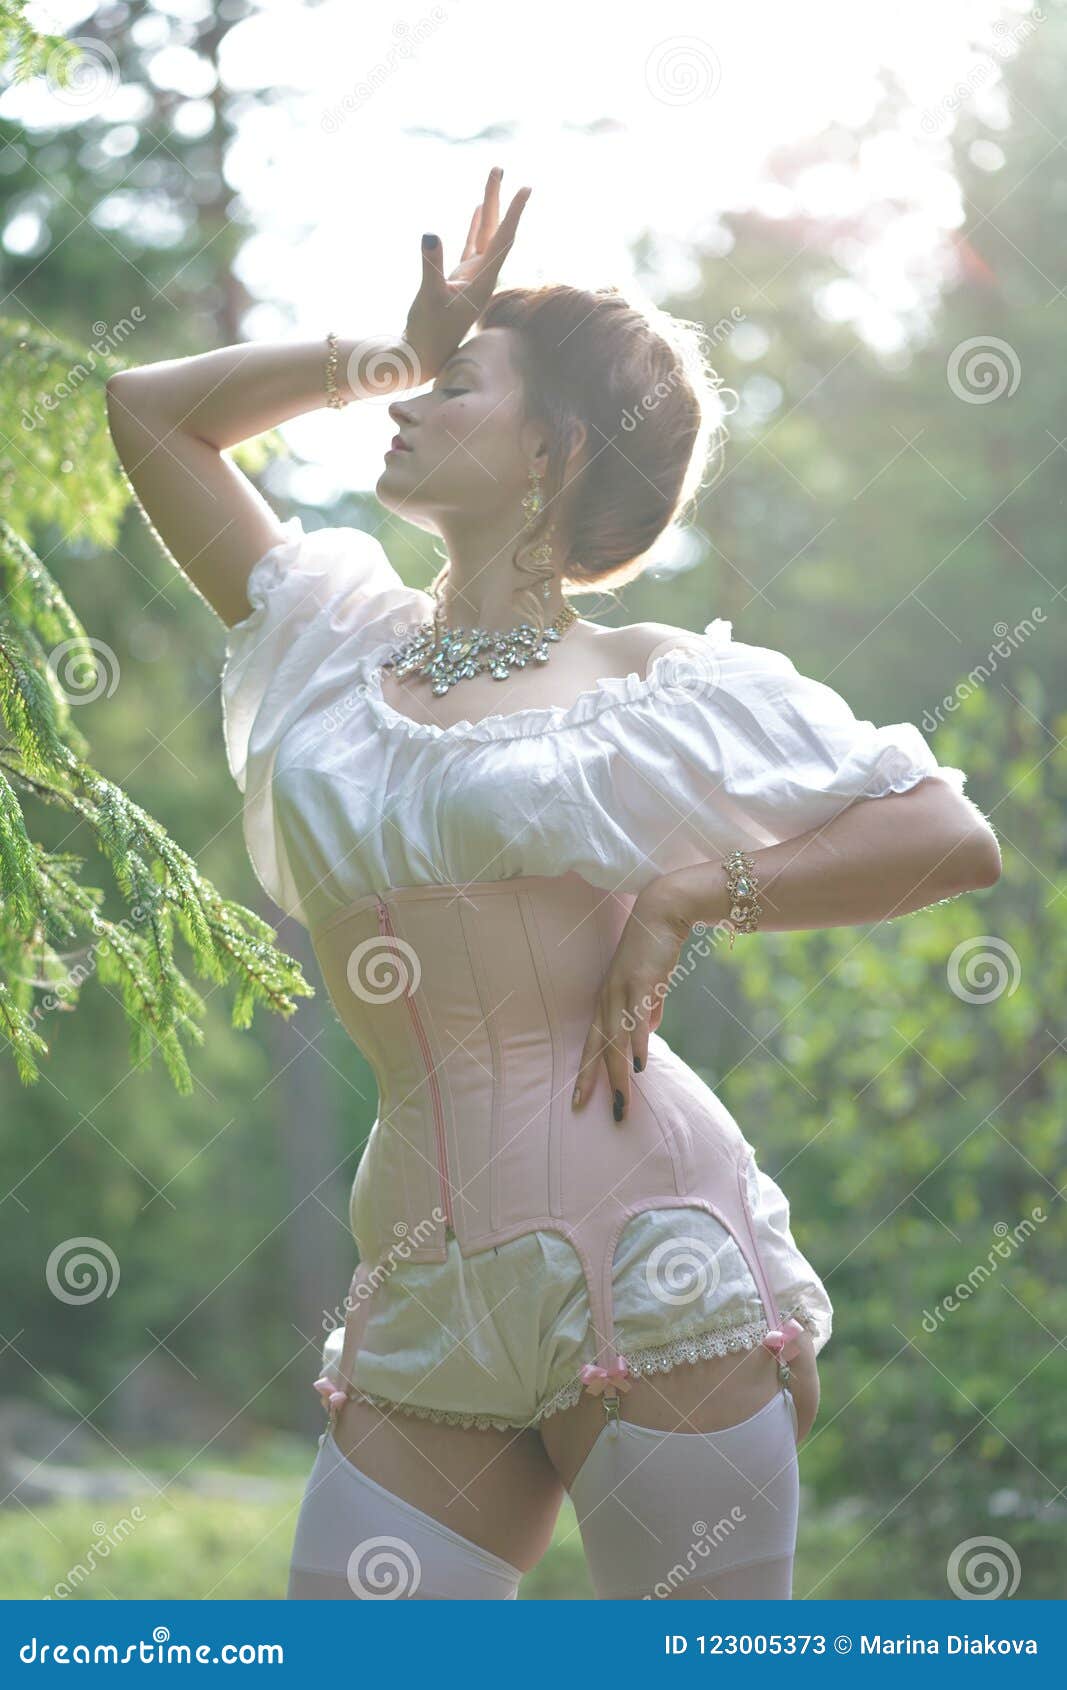 Chubby girl in corset